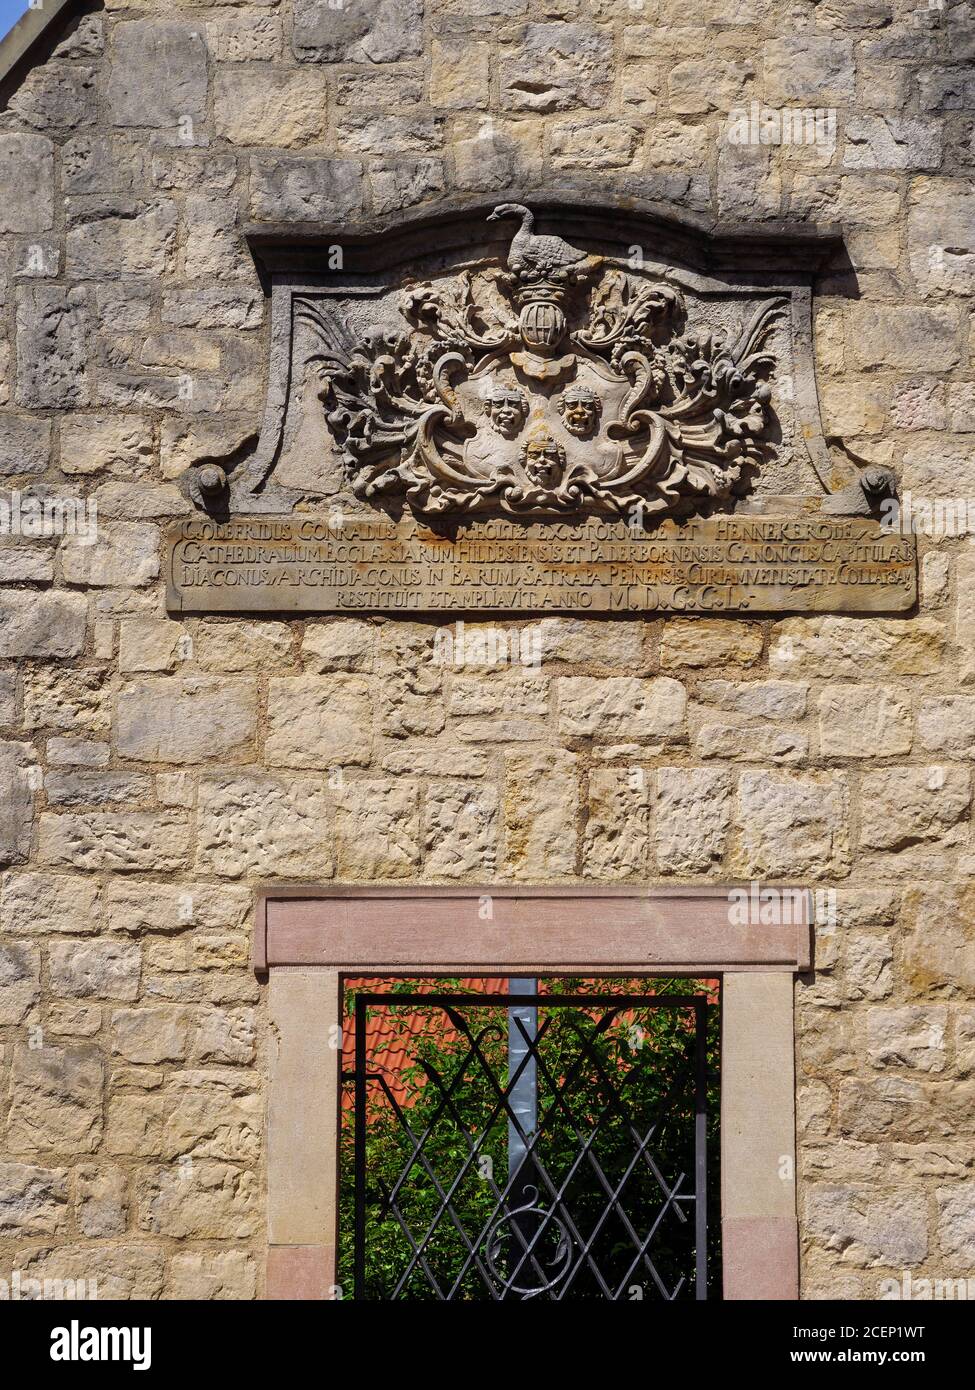 Giebelwand mit Wappenschild am Domplatz, Hildesheim, Niedersachsen, Deutschland, mur de toit Europa avec bras Coatof à Domplatz, Hildesheim, Basse Sax Banque D'Images